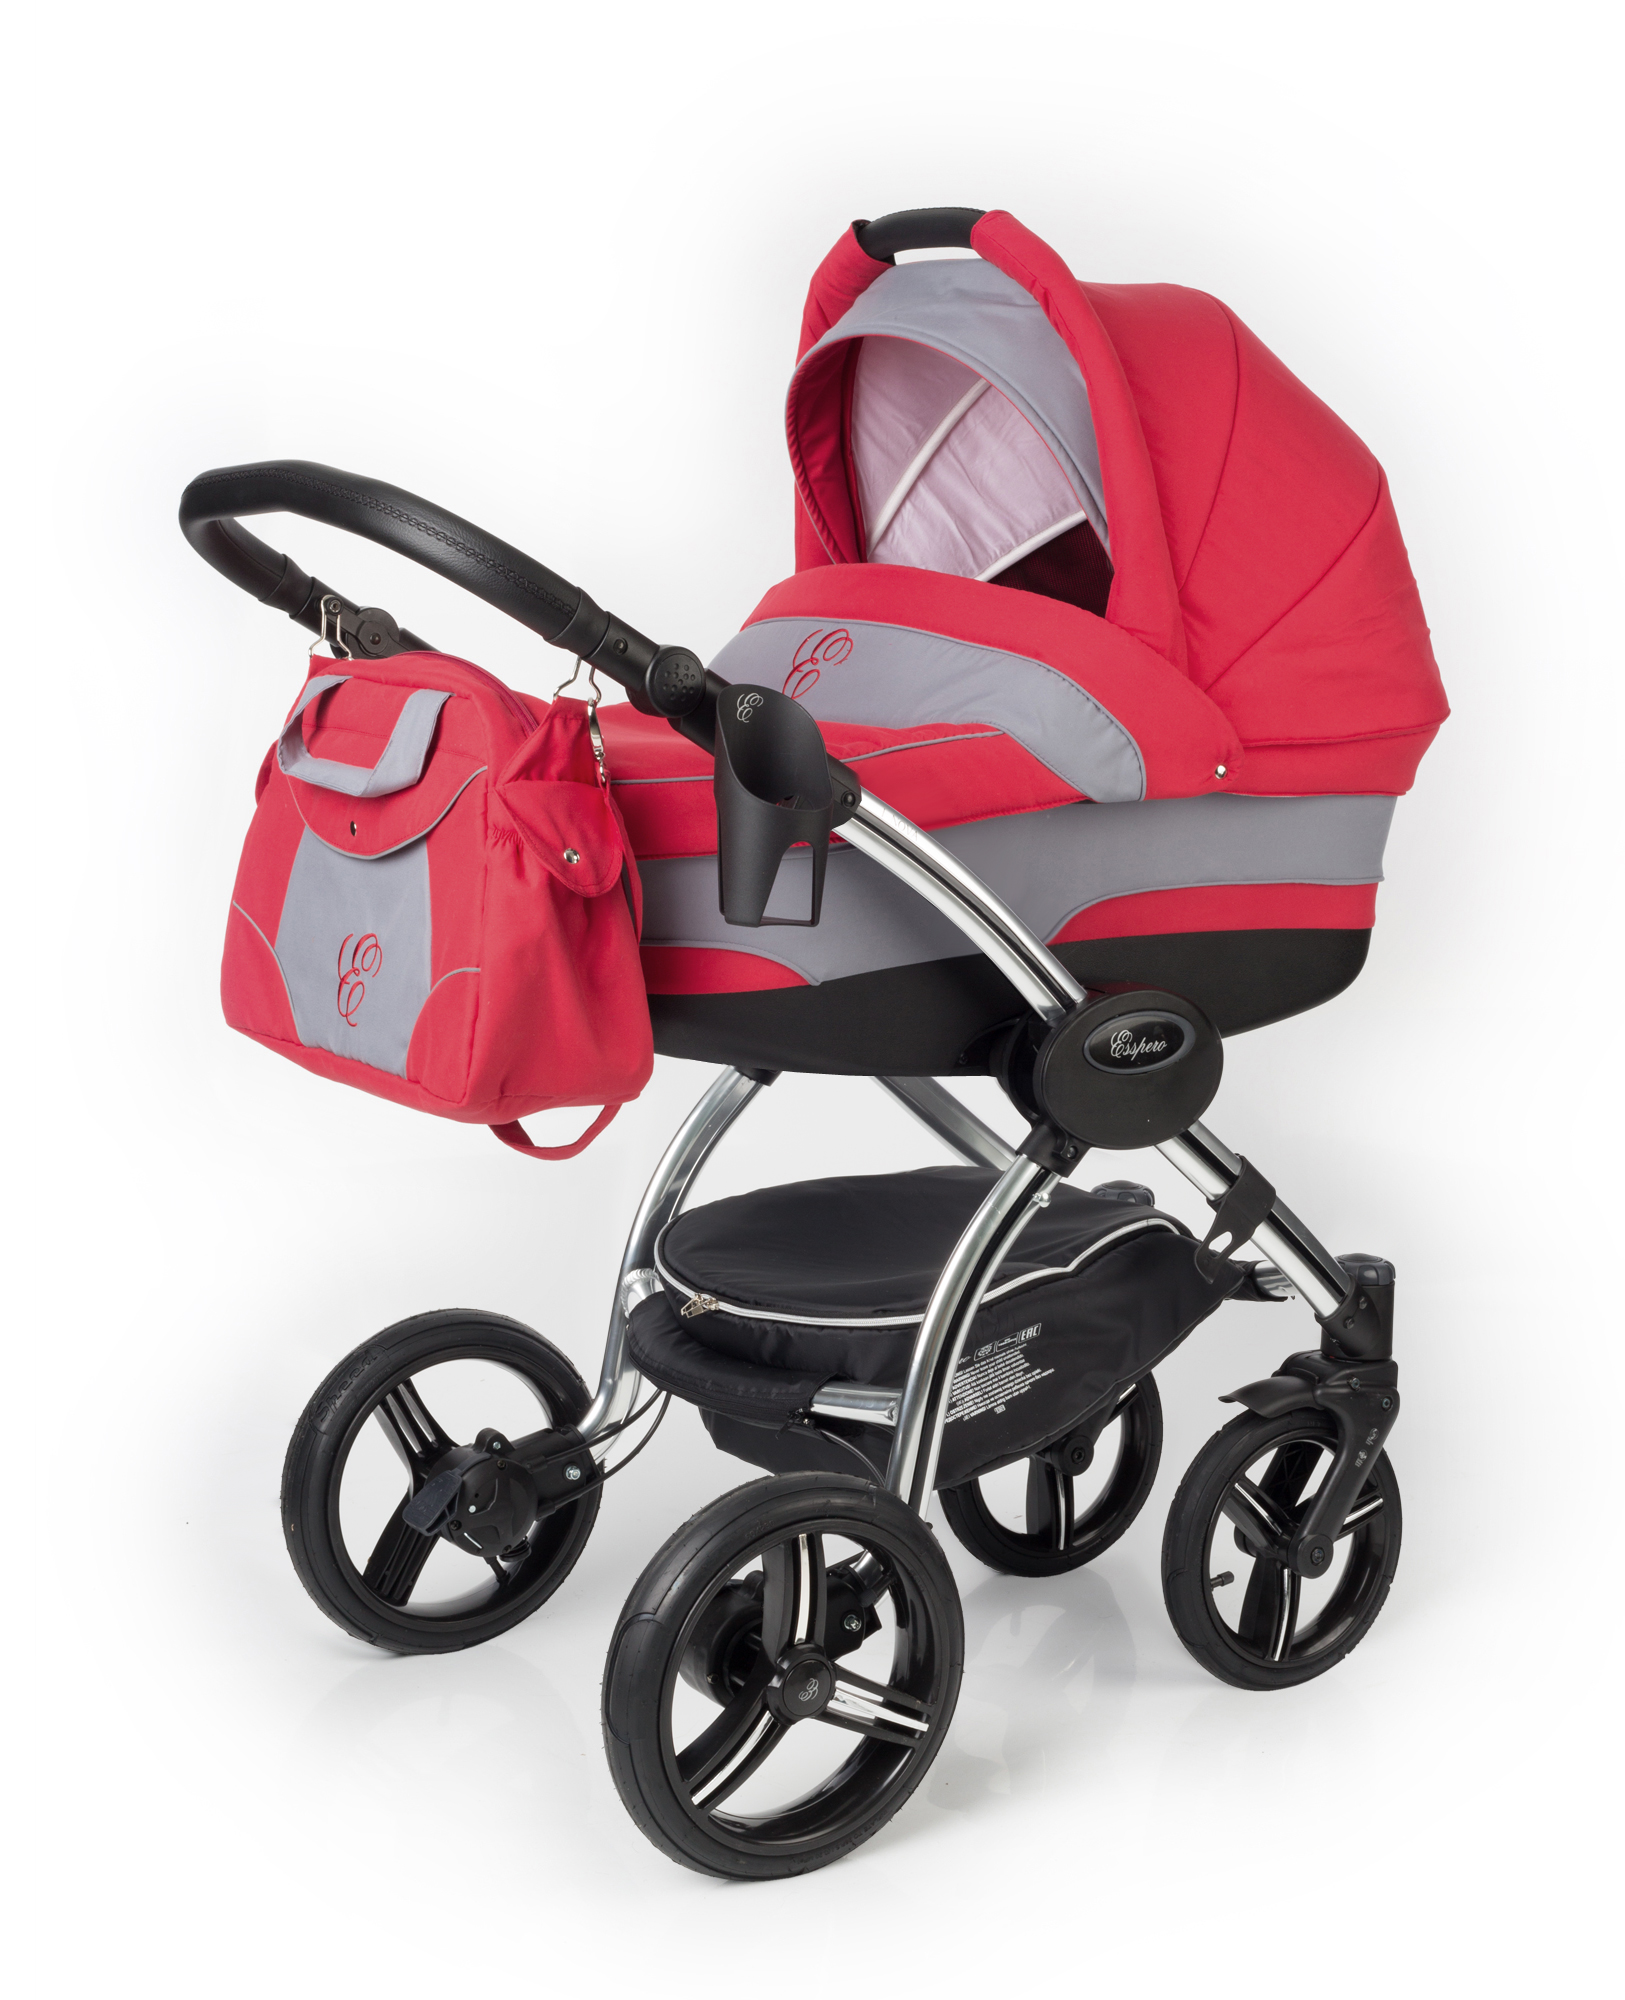 Купить детскую коляску для новорожденных в москве. Коляска Esspero 3в1. Коляска Esspero i-Nova 2 в 1. Коляска Nova 3 в 1. Коляска для новорожденных 3 в 1 Норди.